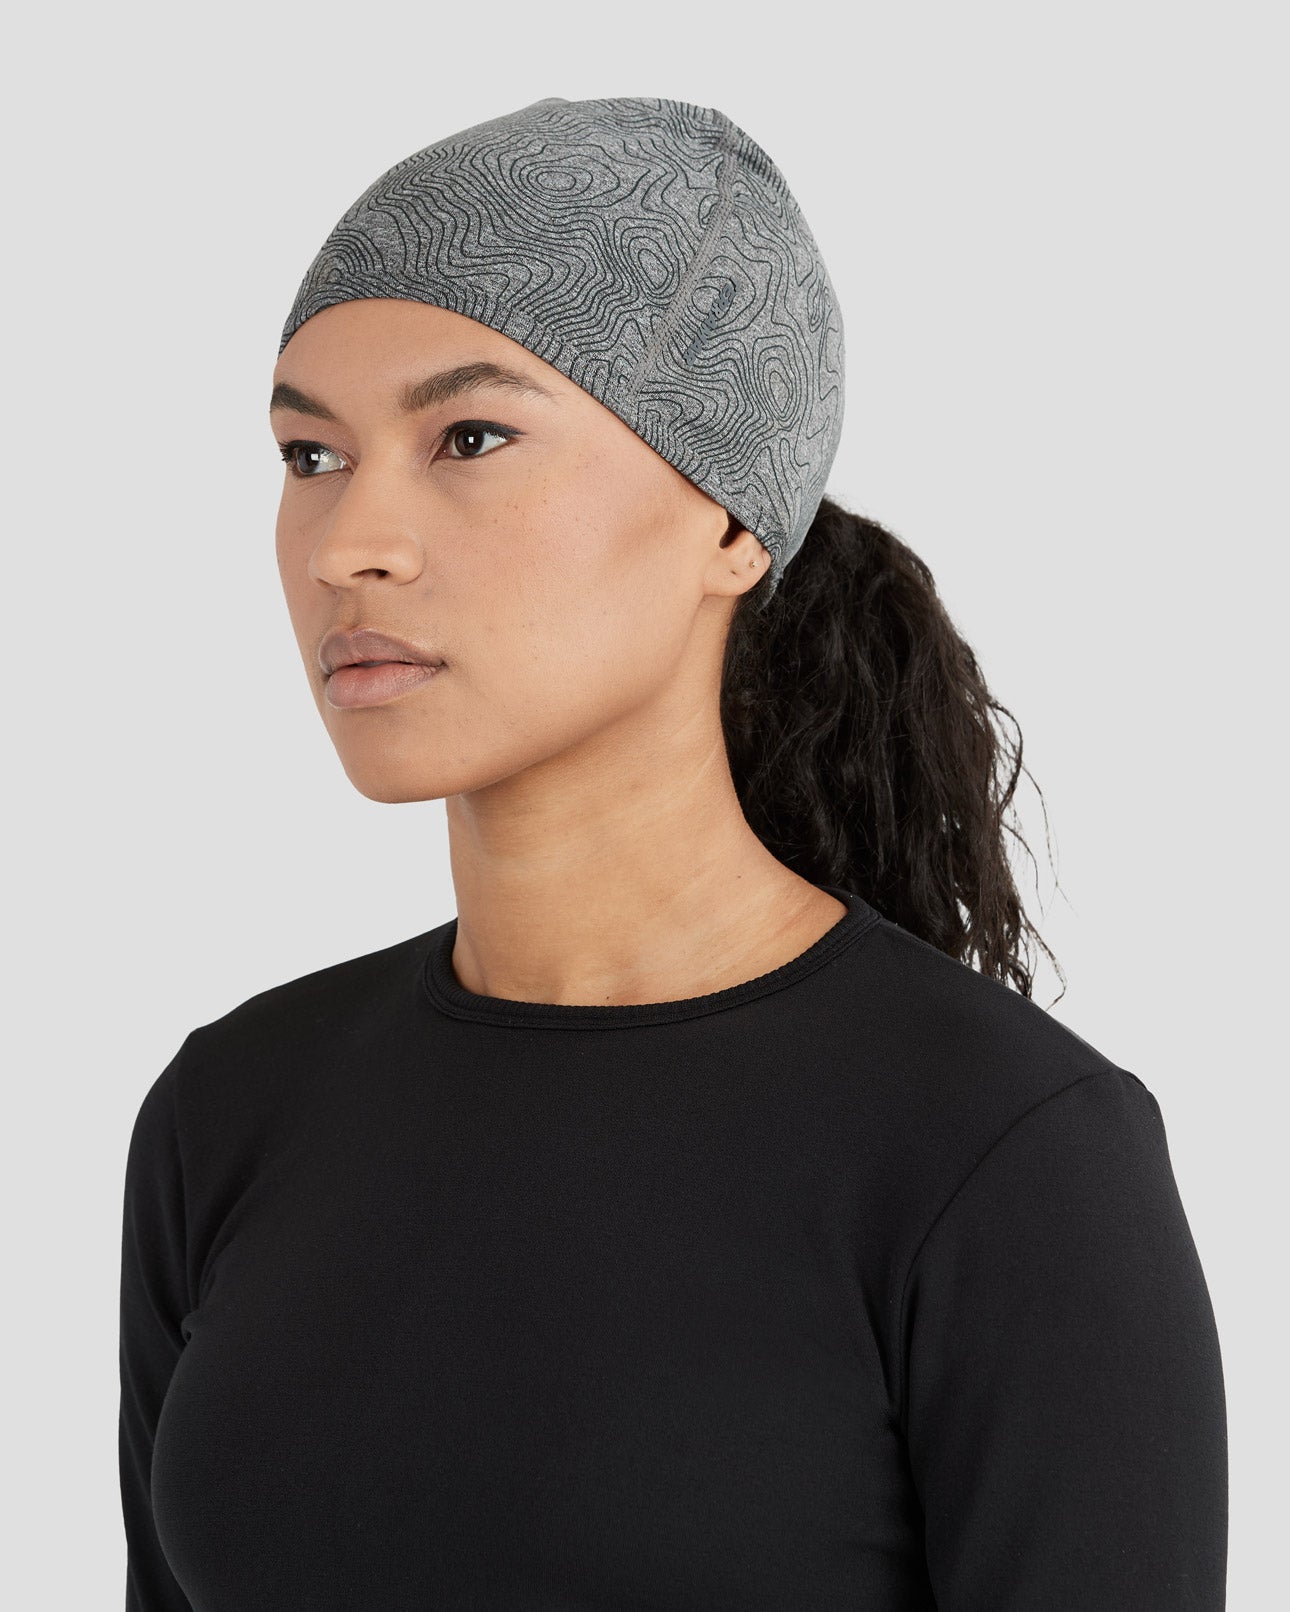 3.0 Women's Below-Zero Heavyweight Warm Hat